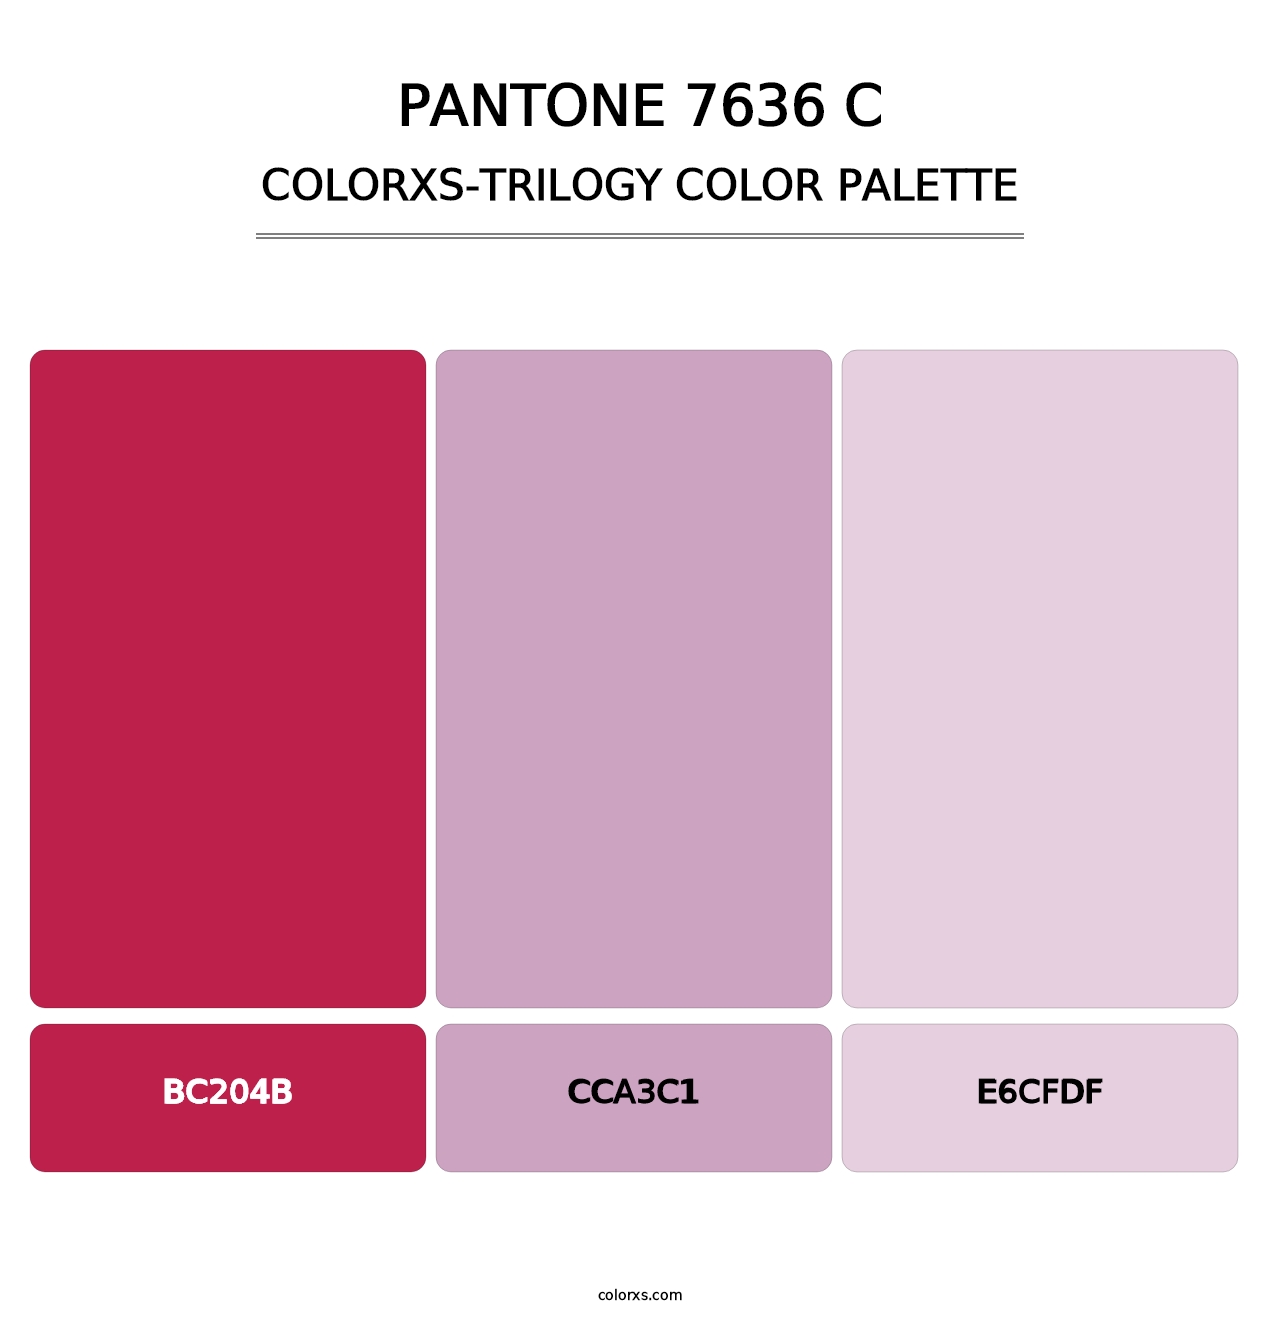 PANTONE 7636 C - Colorxs Trilogy Palette